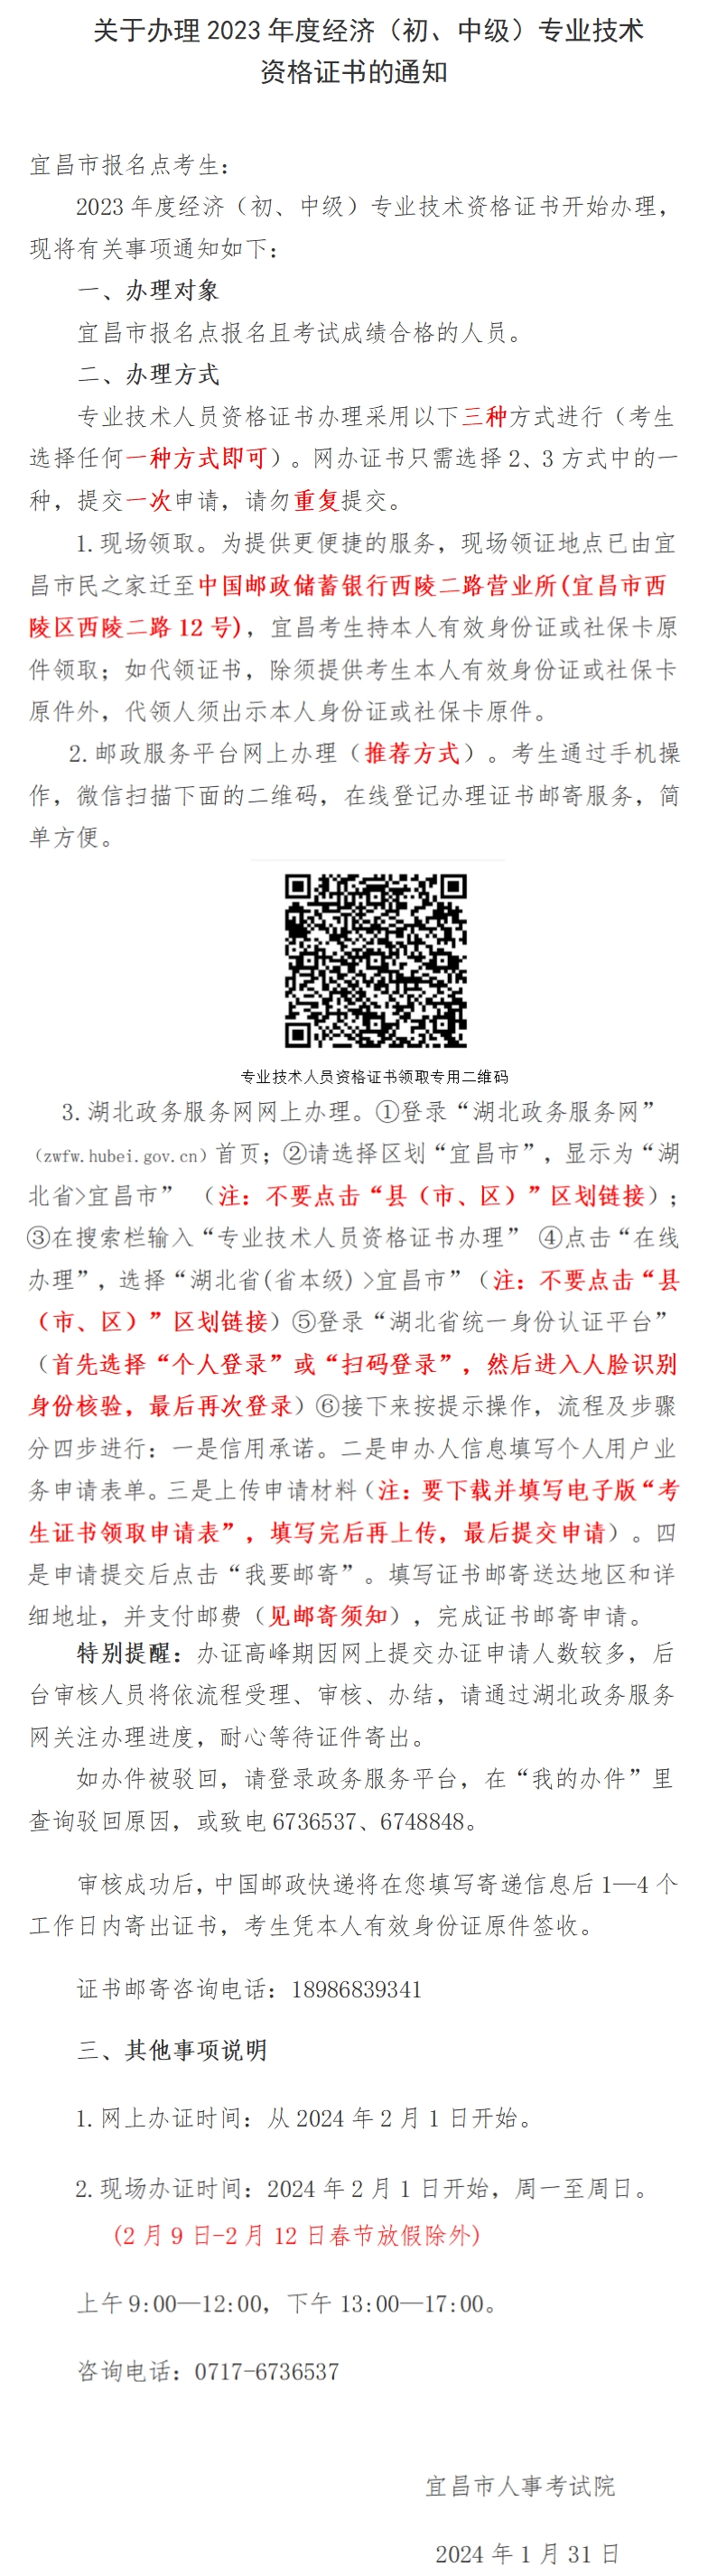 宜昌办理2023年初中级经济师资格证书的通知